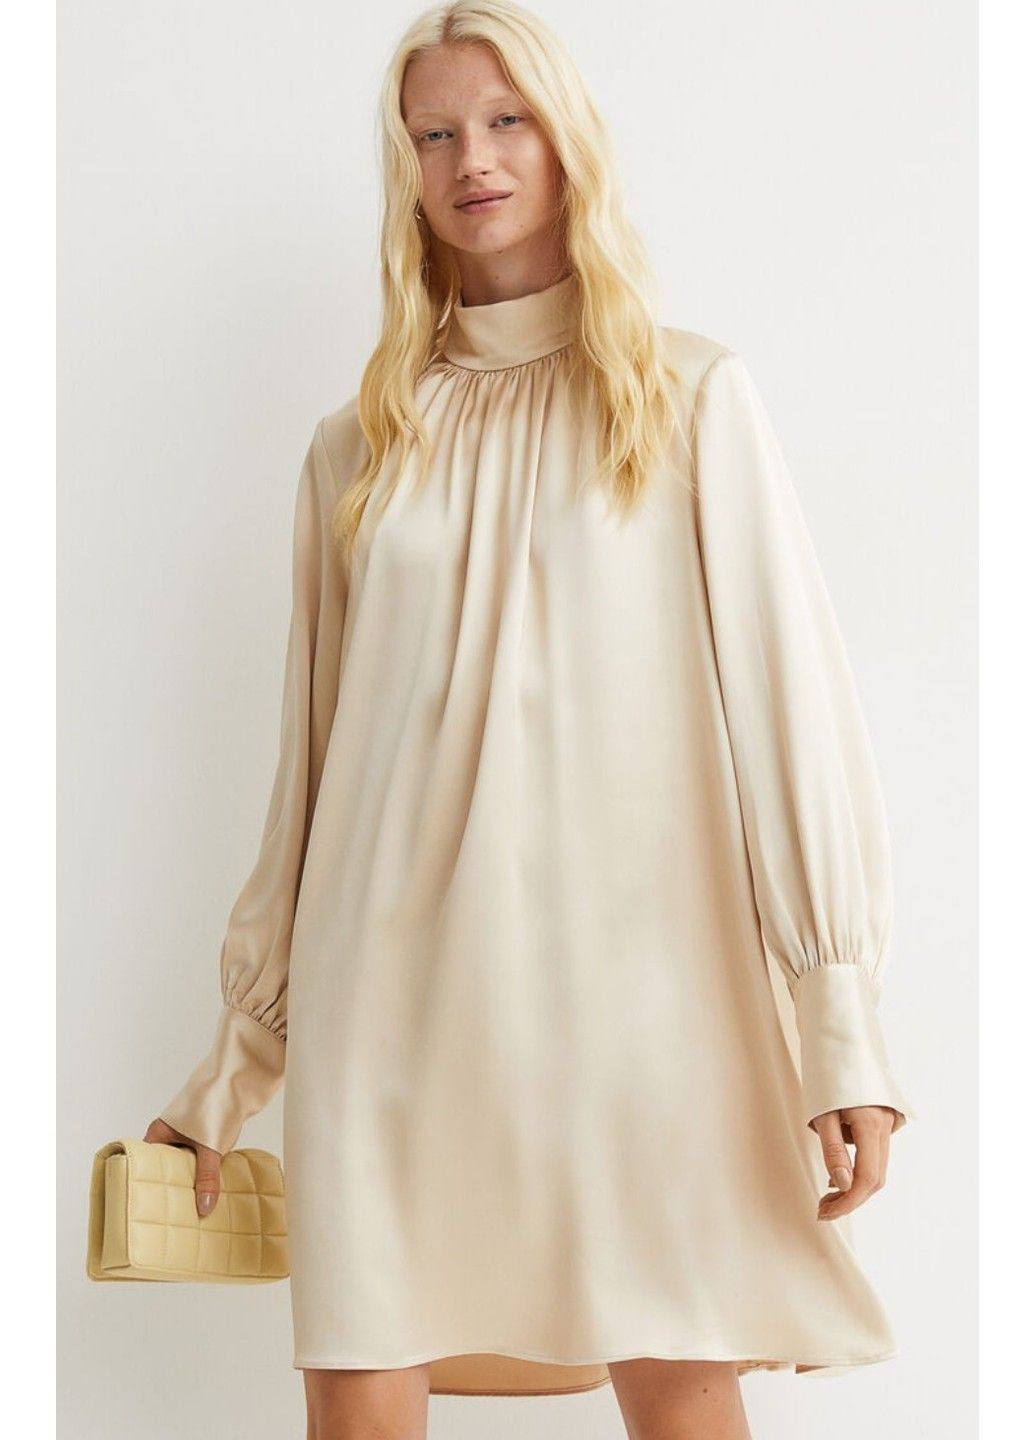 Светло-бежевое деловое женское атласное платье н&м (56667) xs светло-бежевое H&M